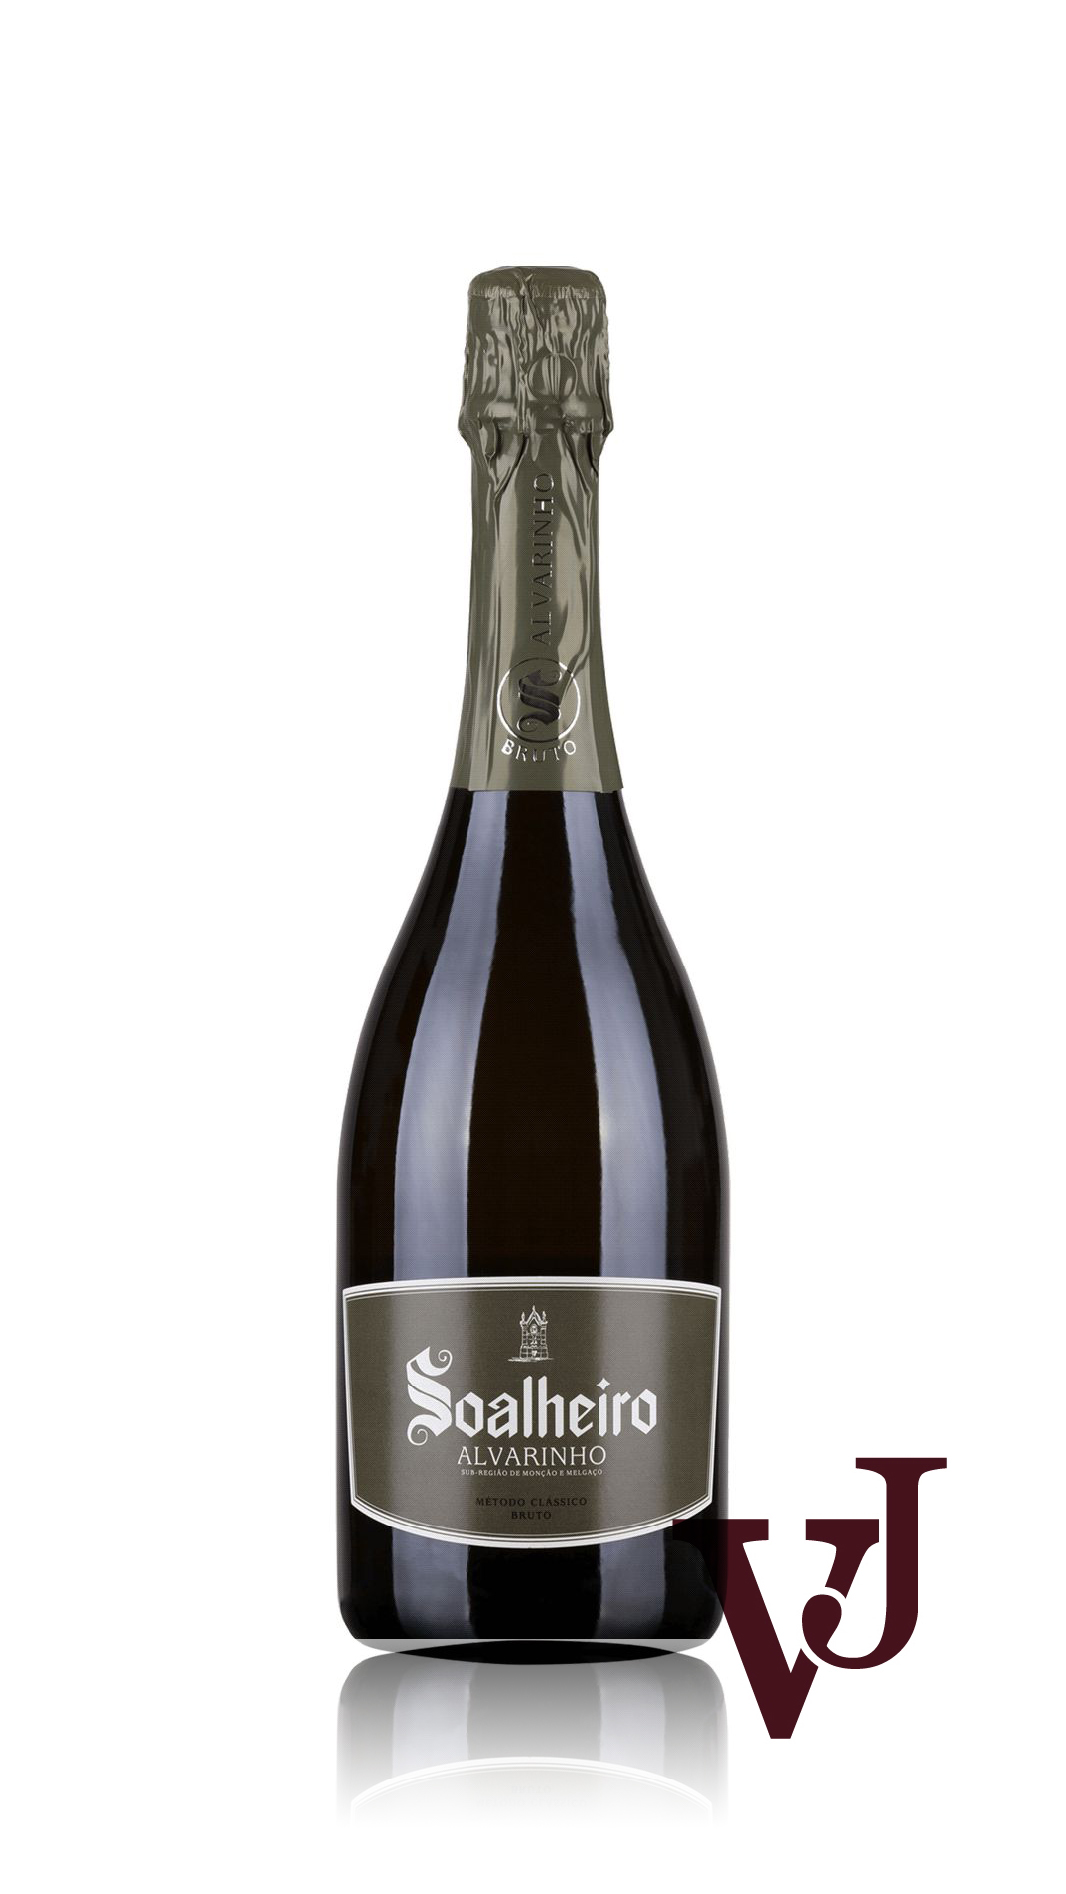 Mousserande Vin - Soalheiro artikel nummer 5664601 från producenten Soalheiro från området Portugal